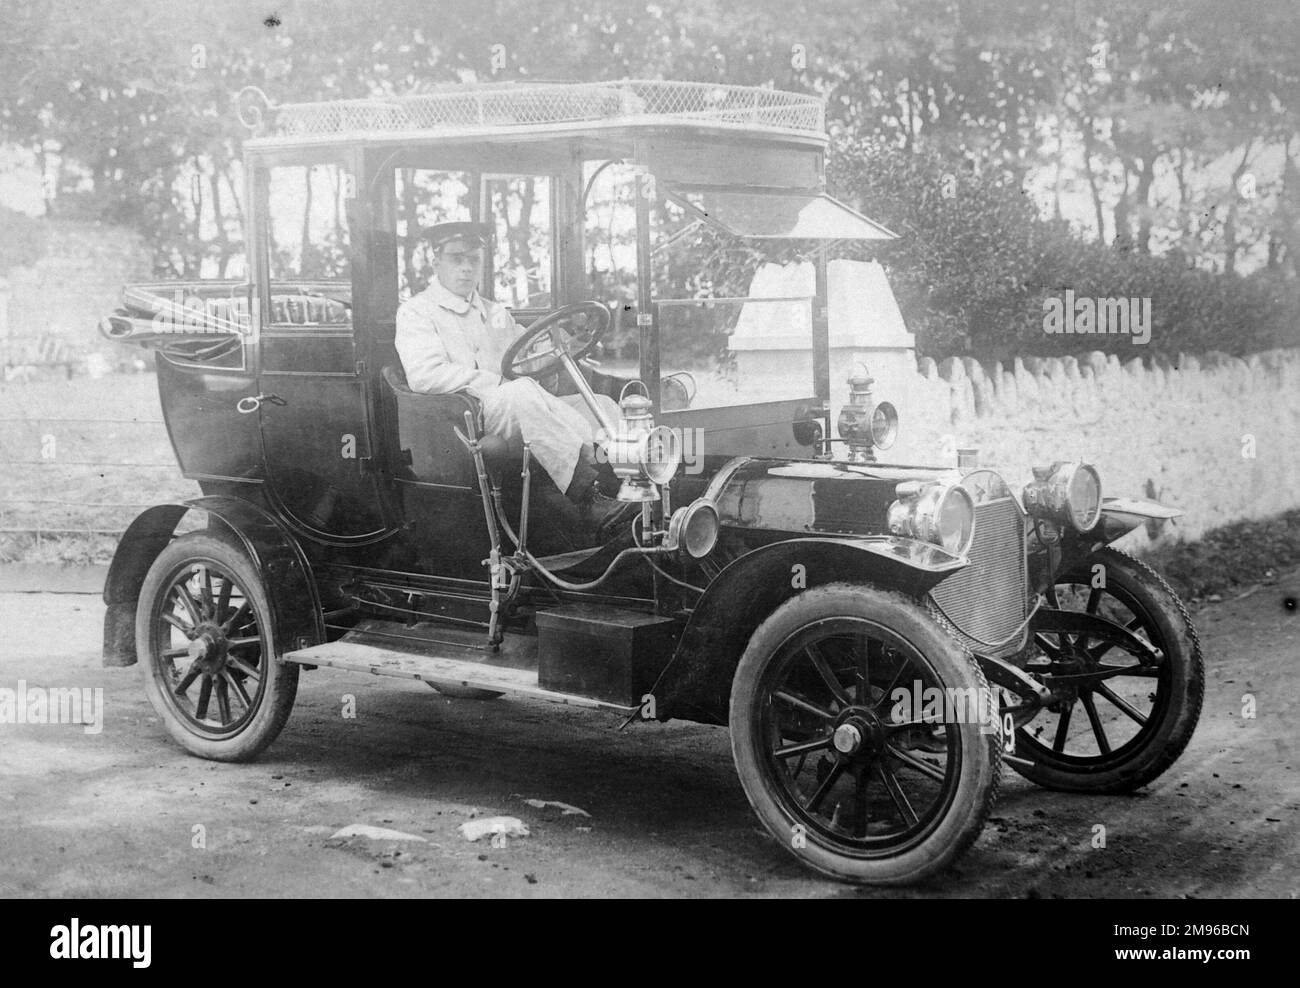 M. E Codd de Bland Motors, conduisant une voiture de la Star Motor Company, probablement à Haverfordwest, Pembrokeshire, au sud du pays de Galles. J & G Bland (Motors) Ltd a été fondée en 1875 et est encore en vigueur aujourd'hui. Banque D'Images